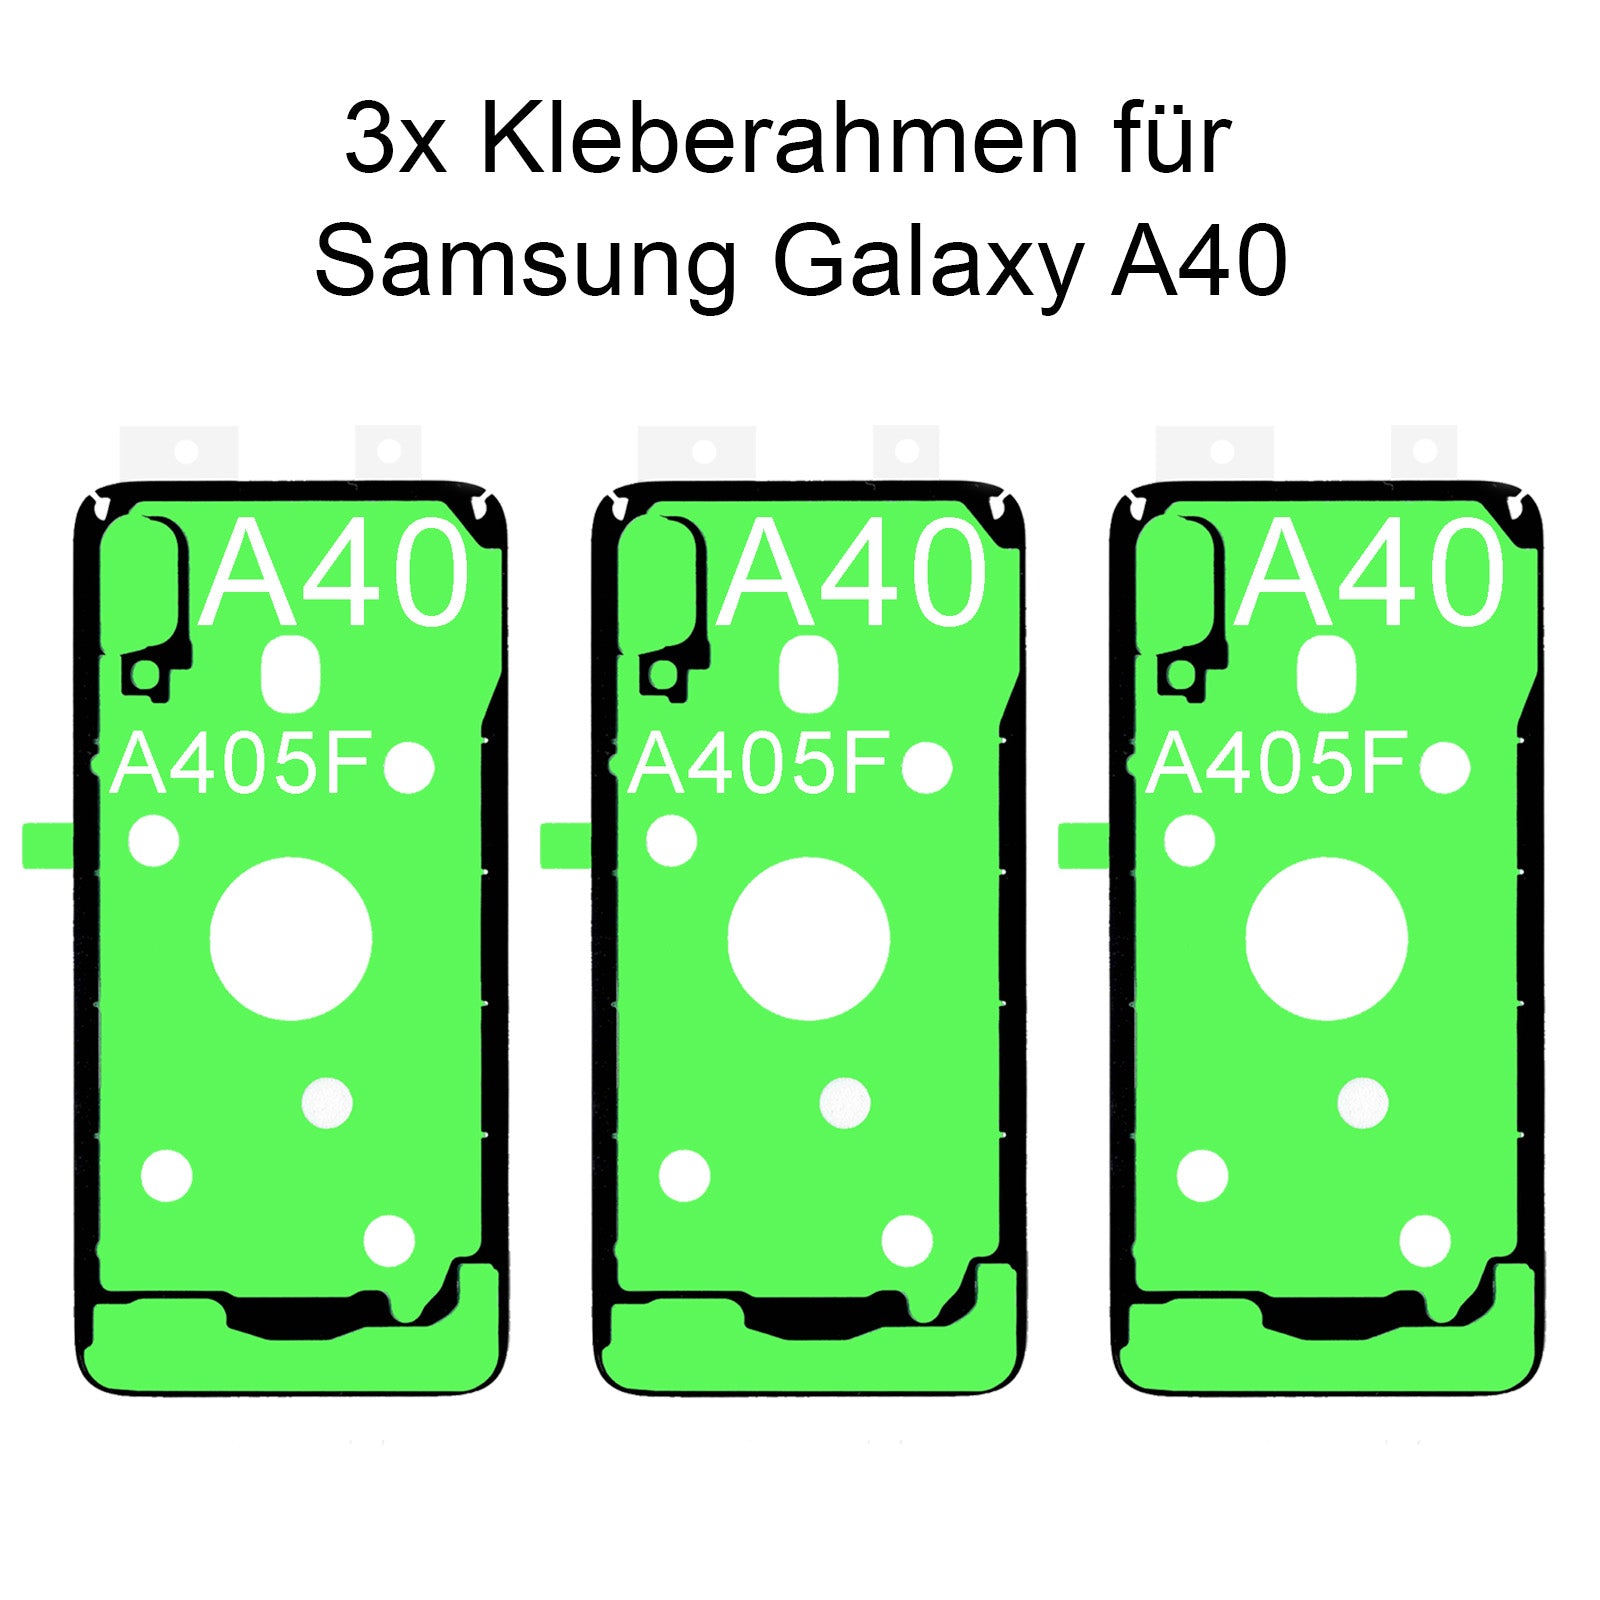 3x von unsern Samsung Galaxy A40 SM-A405F Kleberahmen, jetzt im Dinngsonline Shop entdecken und bestellen!